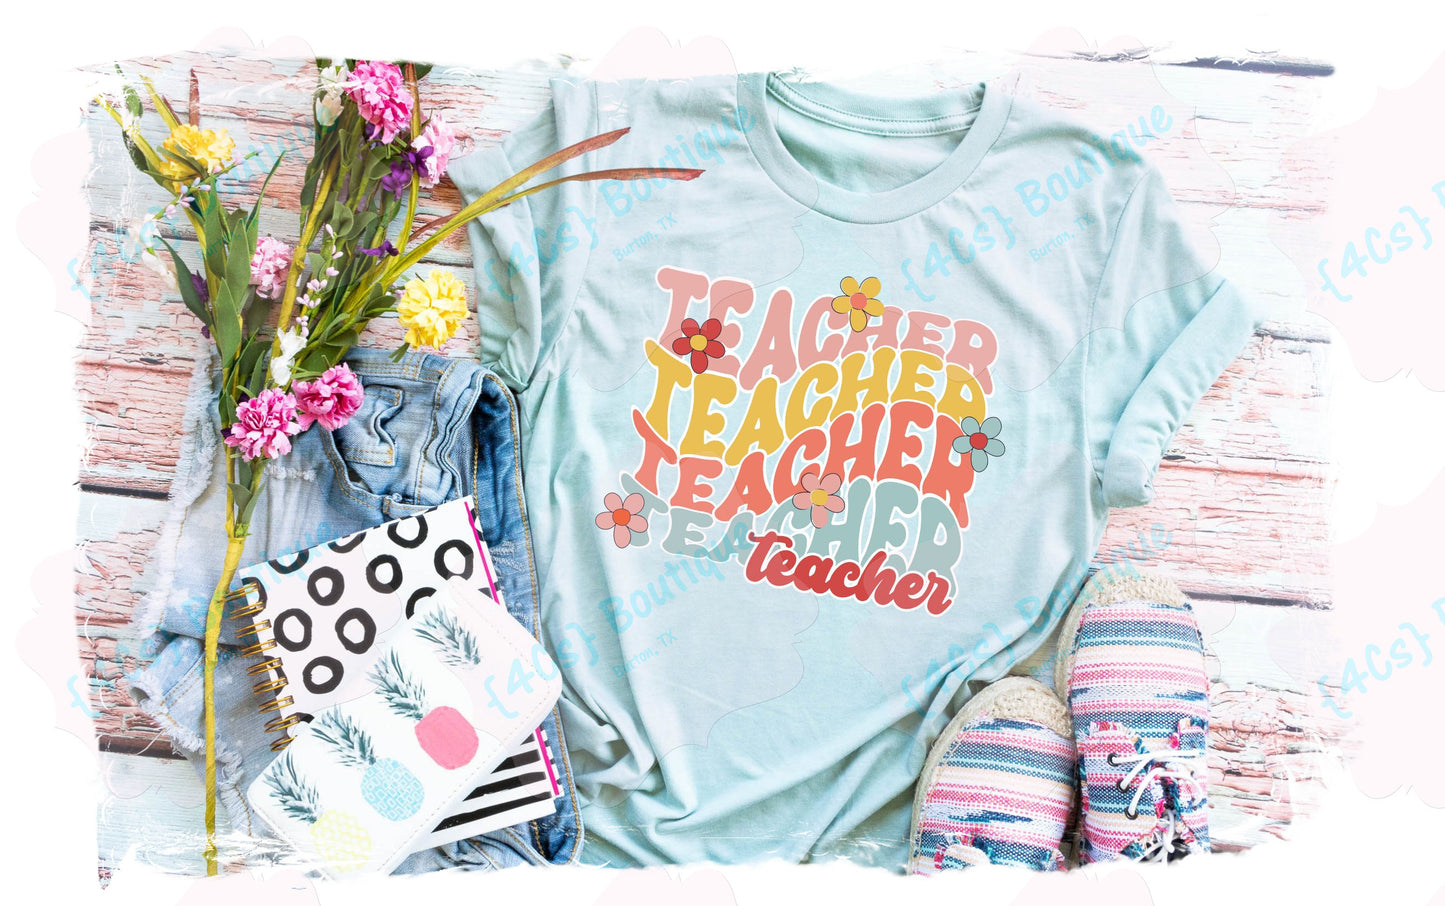 Teacher Teacher Teacher Shirt